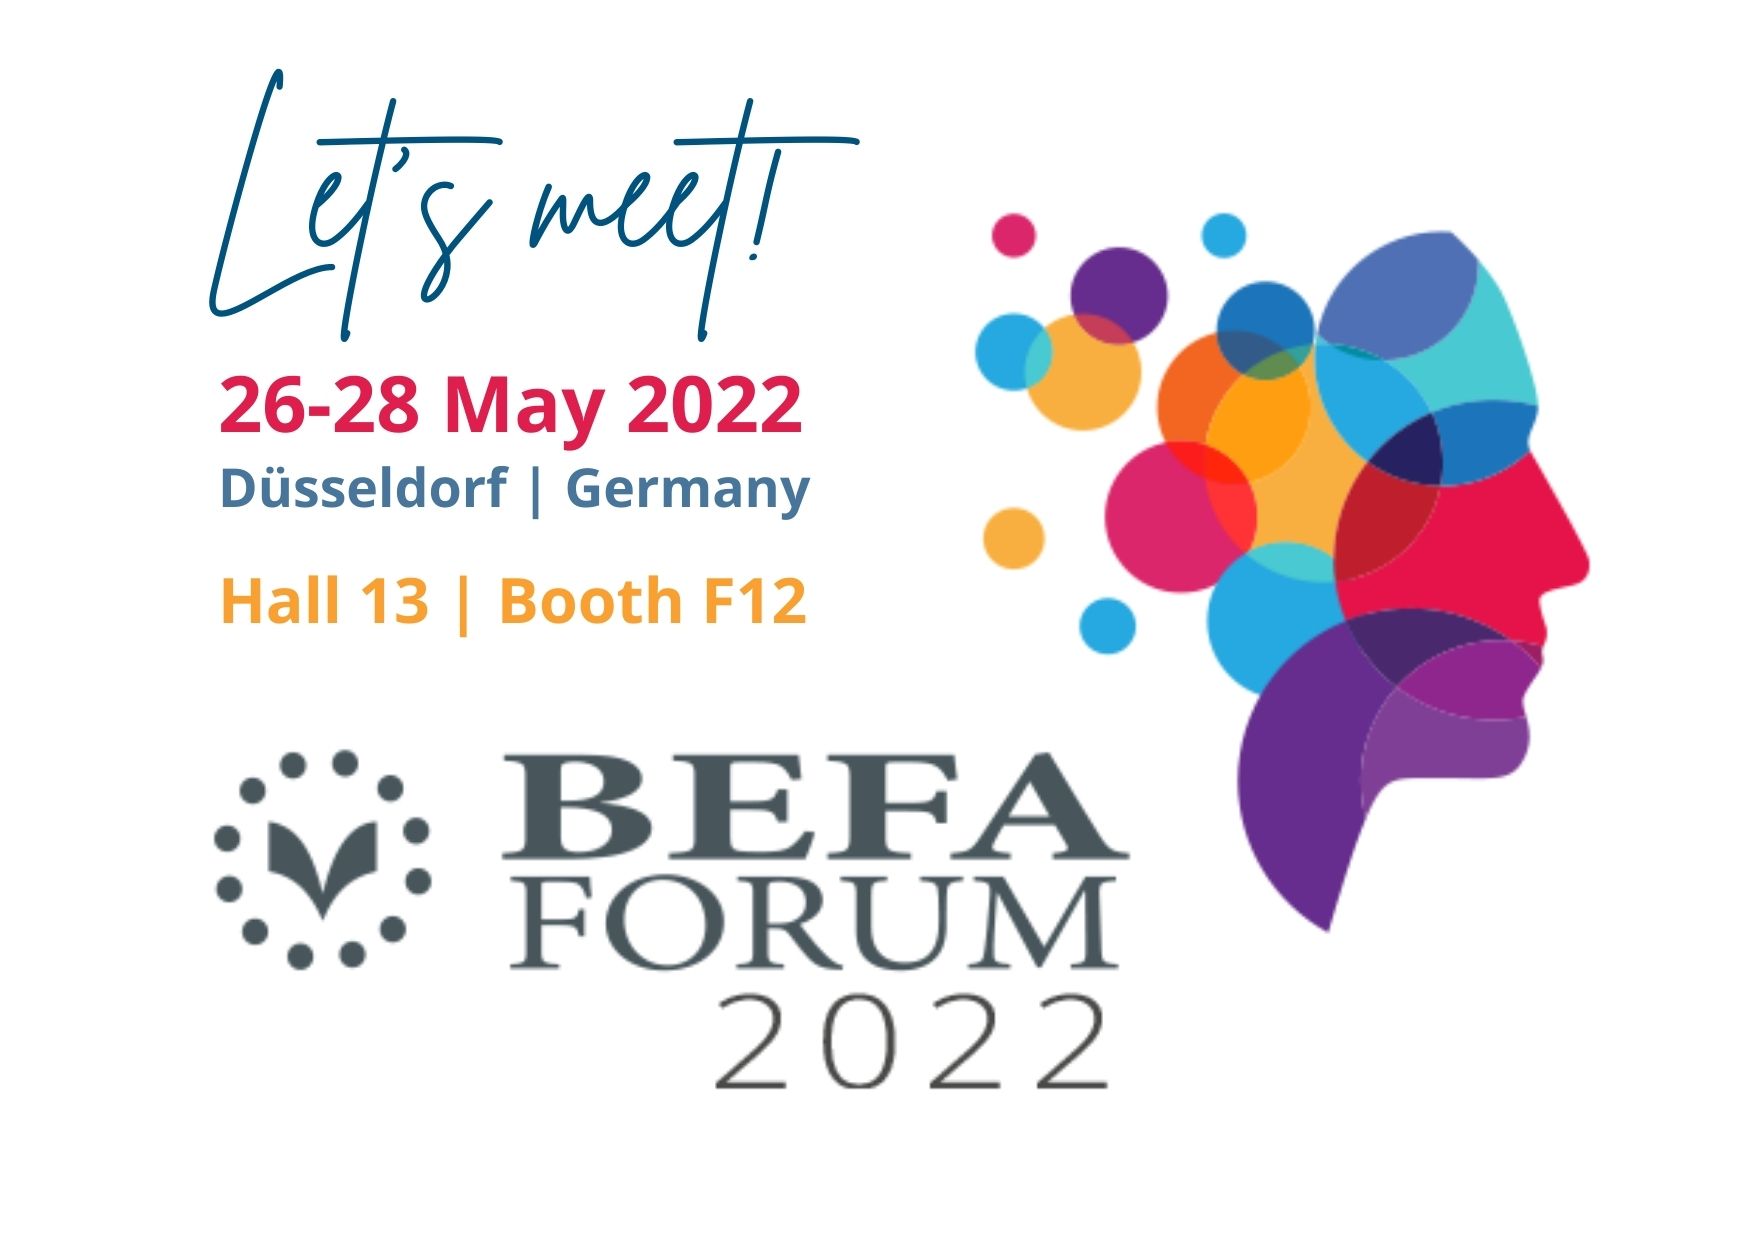 BEFA Forum 2022